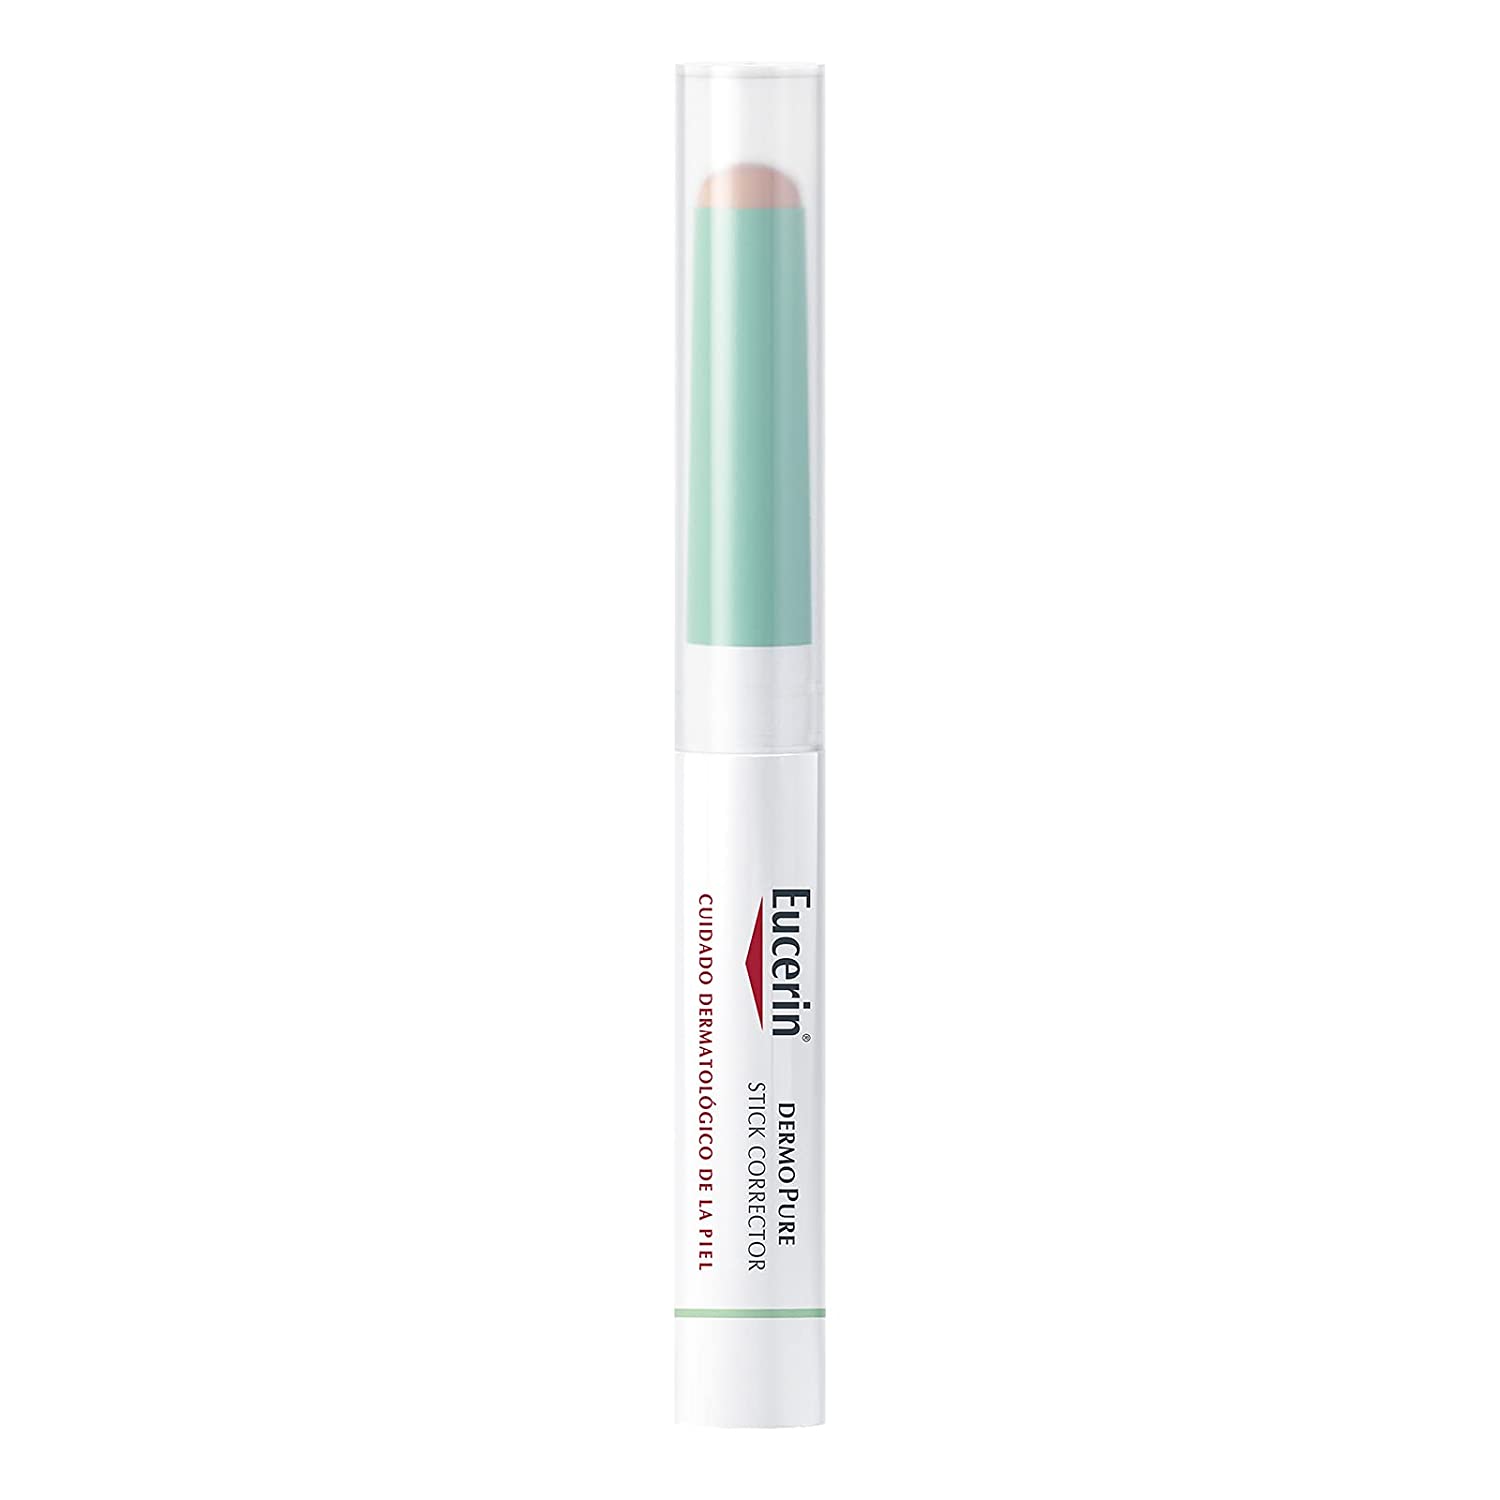 Eucerin Dermo Pure Stick Acne Control 2.5 g